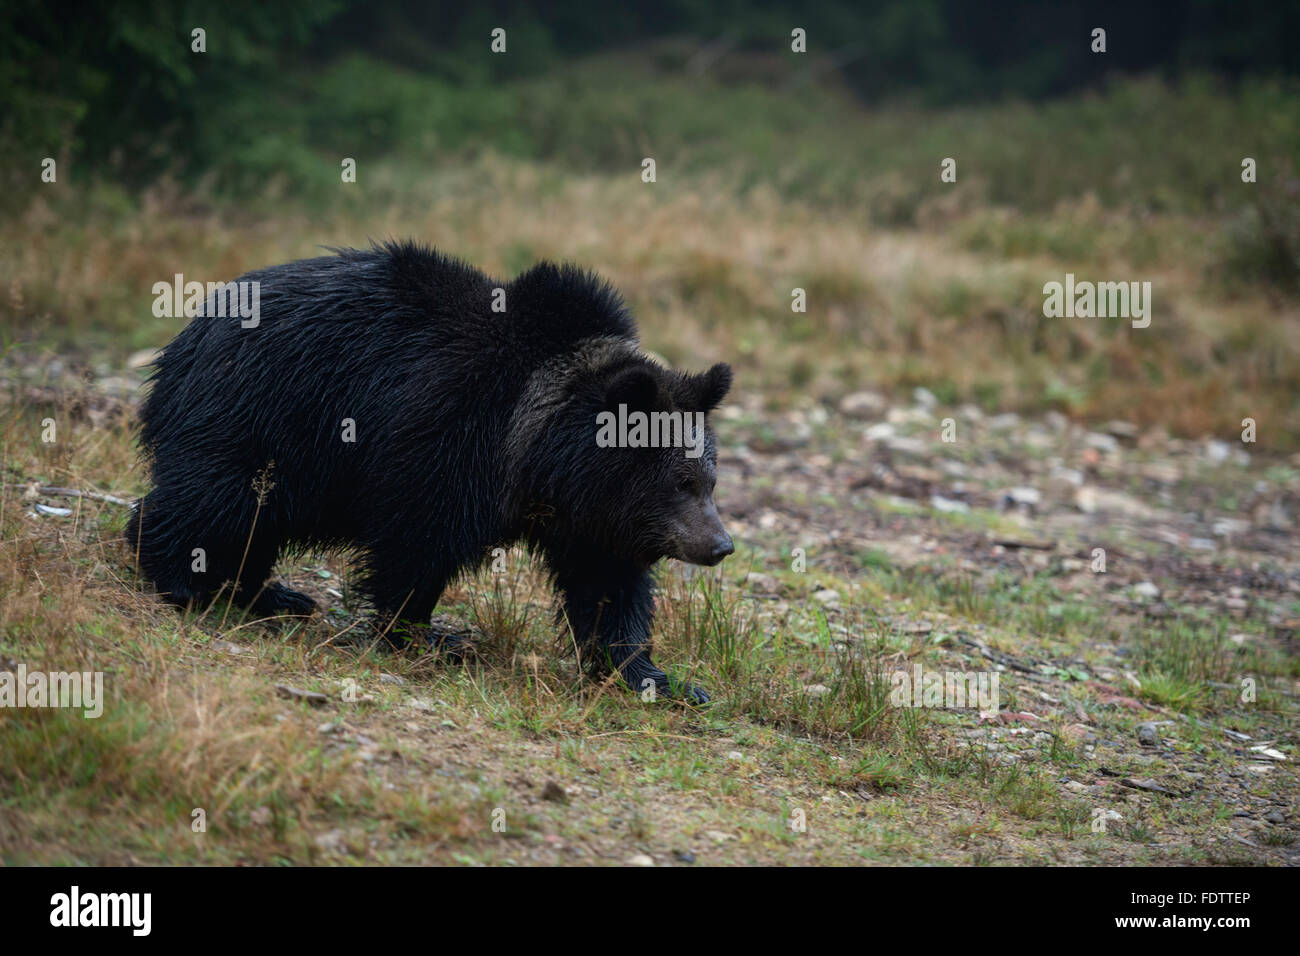 Ours brun européen ( Ursus arctos ) sur son chemin sur une petite clairière au milieu d'une forêt, tôt le matin. Banque D'Images